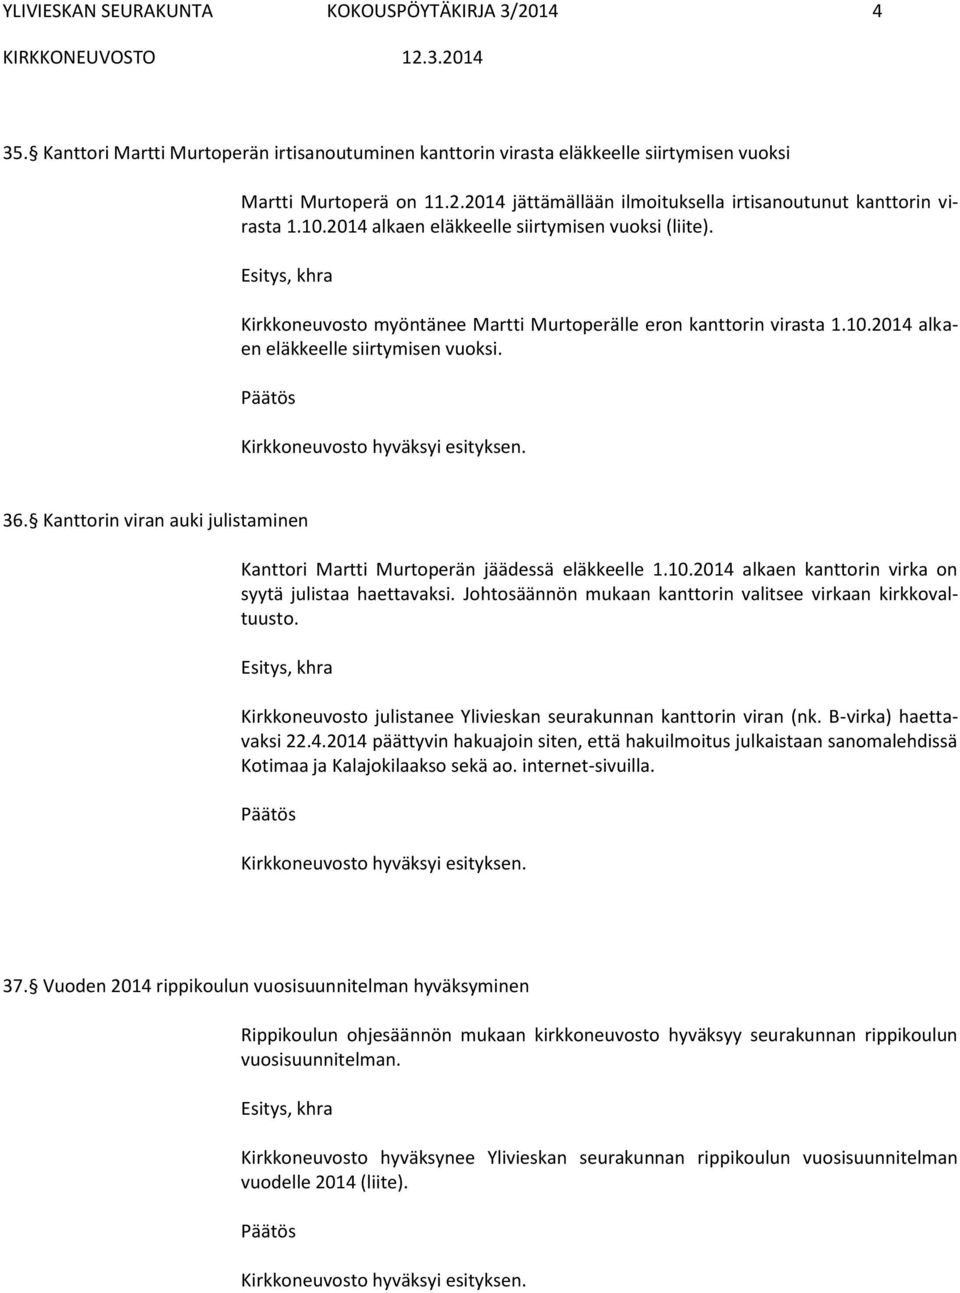 Kanttorin viran auki julistaminen Kanttori Martti Murtoperän jäädessä eläkkeelle 1.10.2014 alkaen kanttorin virka on syytä julistaa haettavaksi.